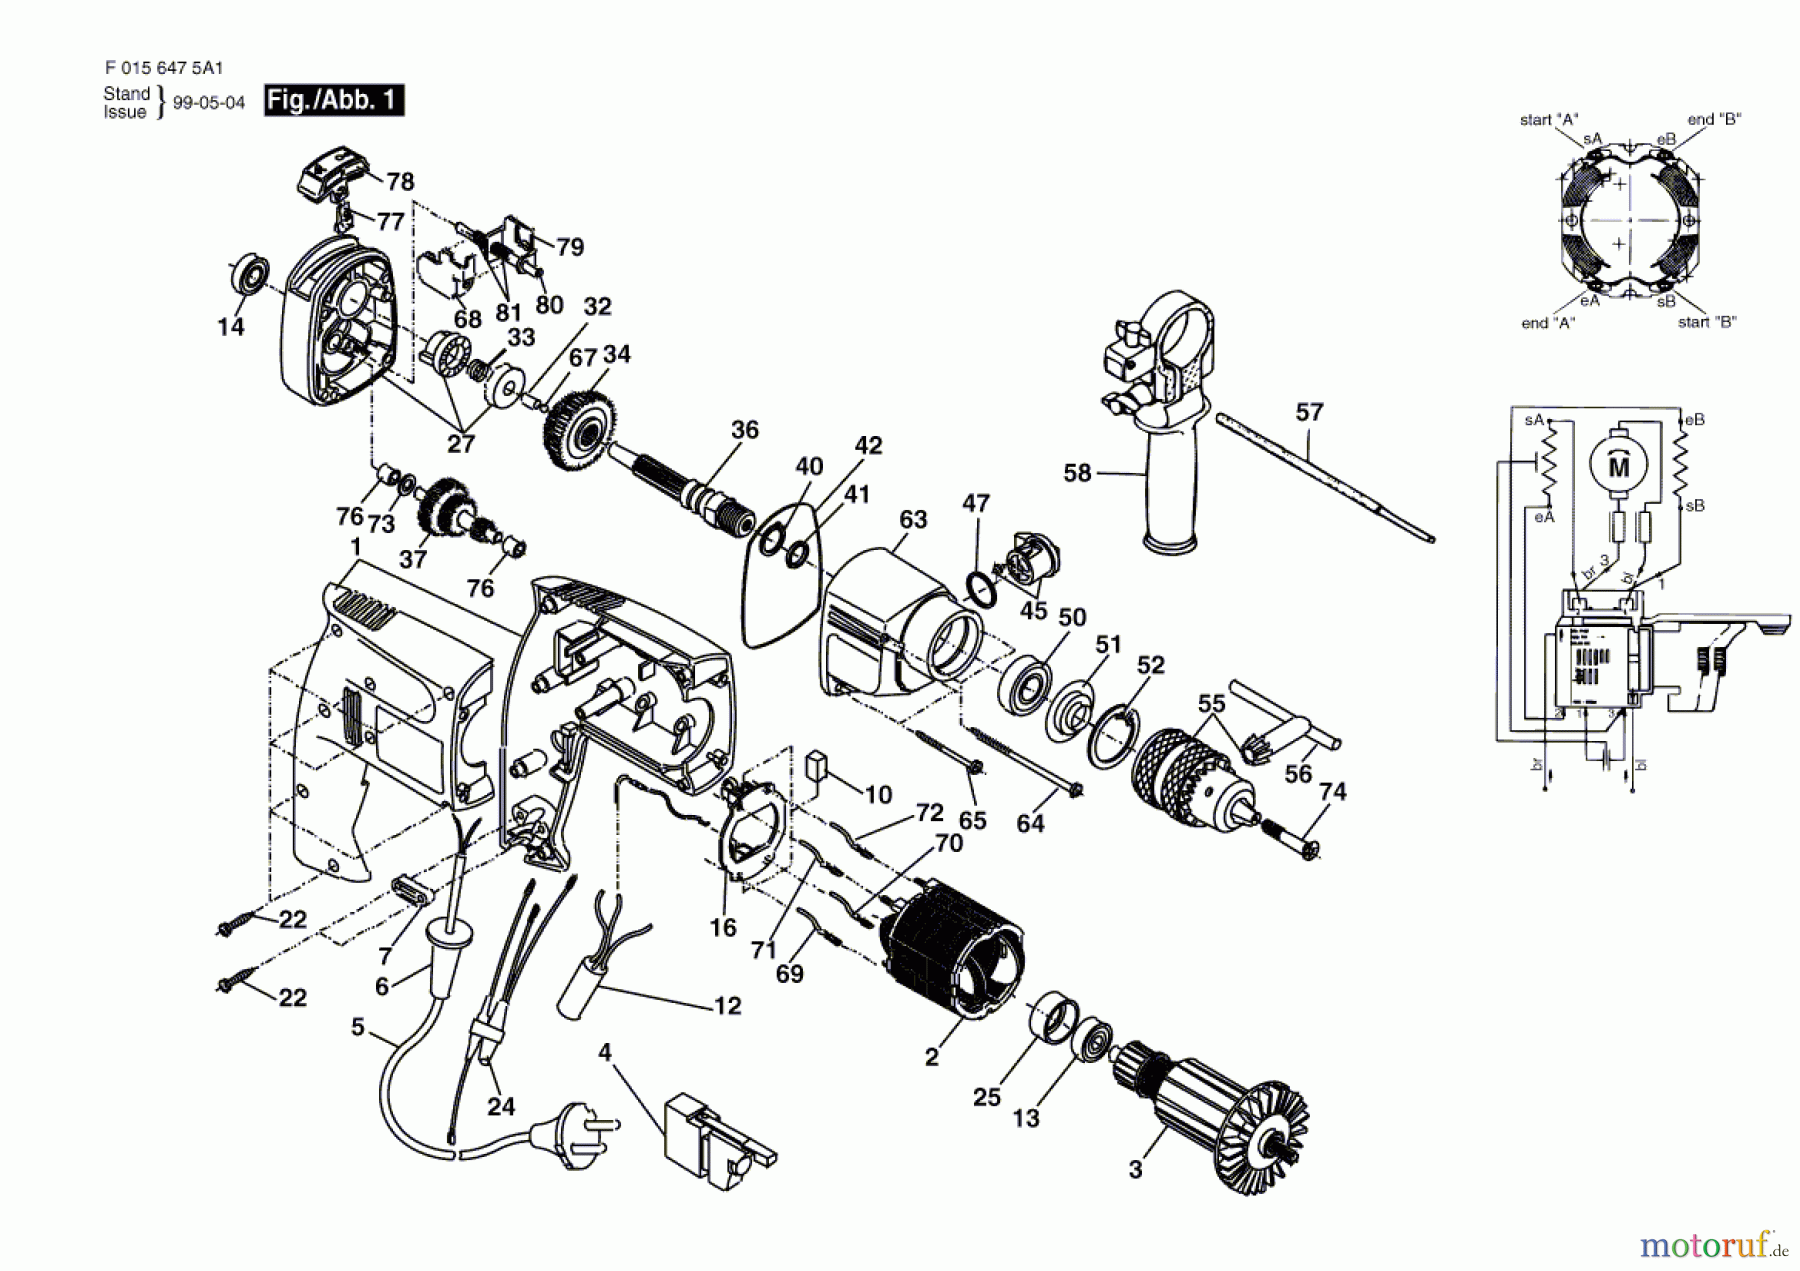  Bosch Werkzeug Ratsche 6475 H1 Seite 1